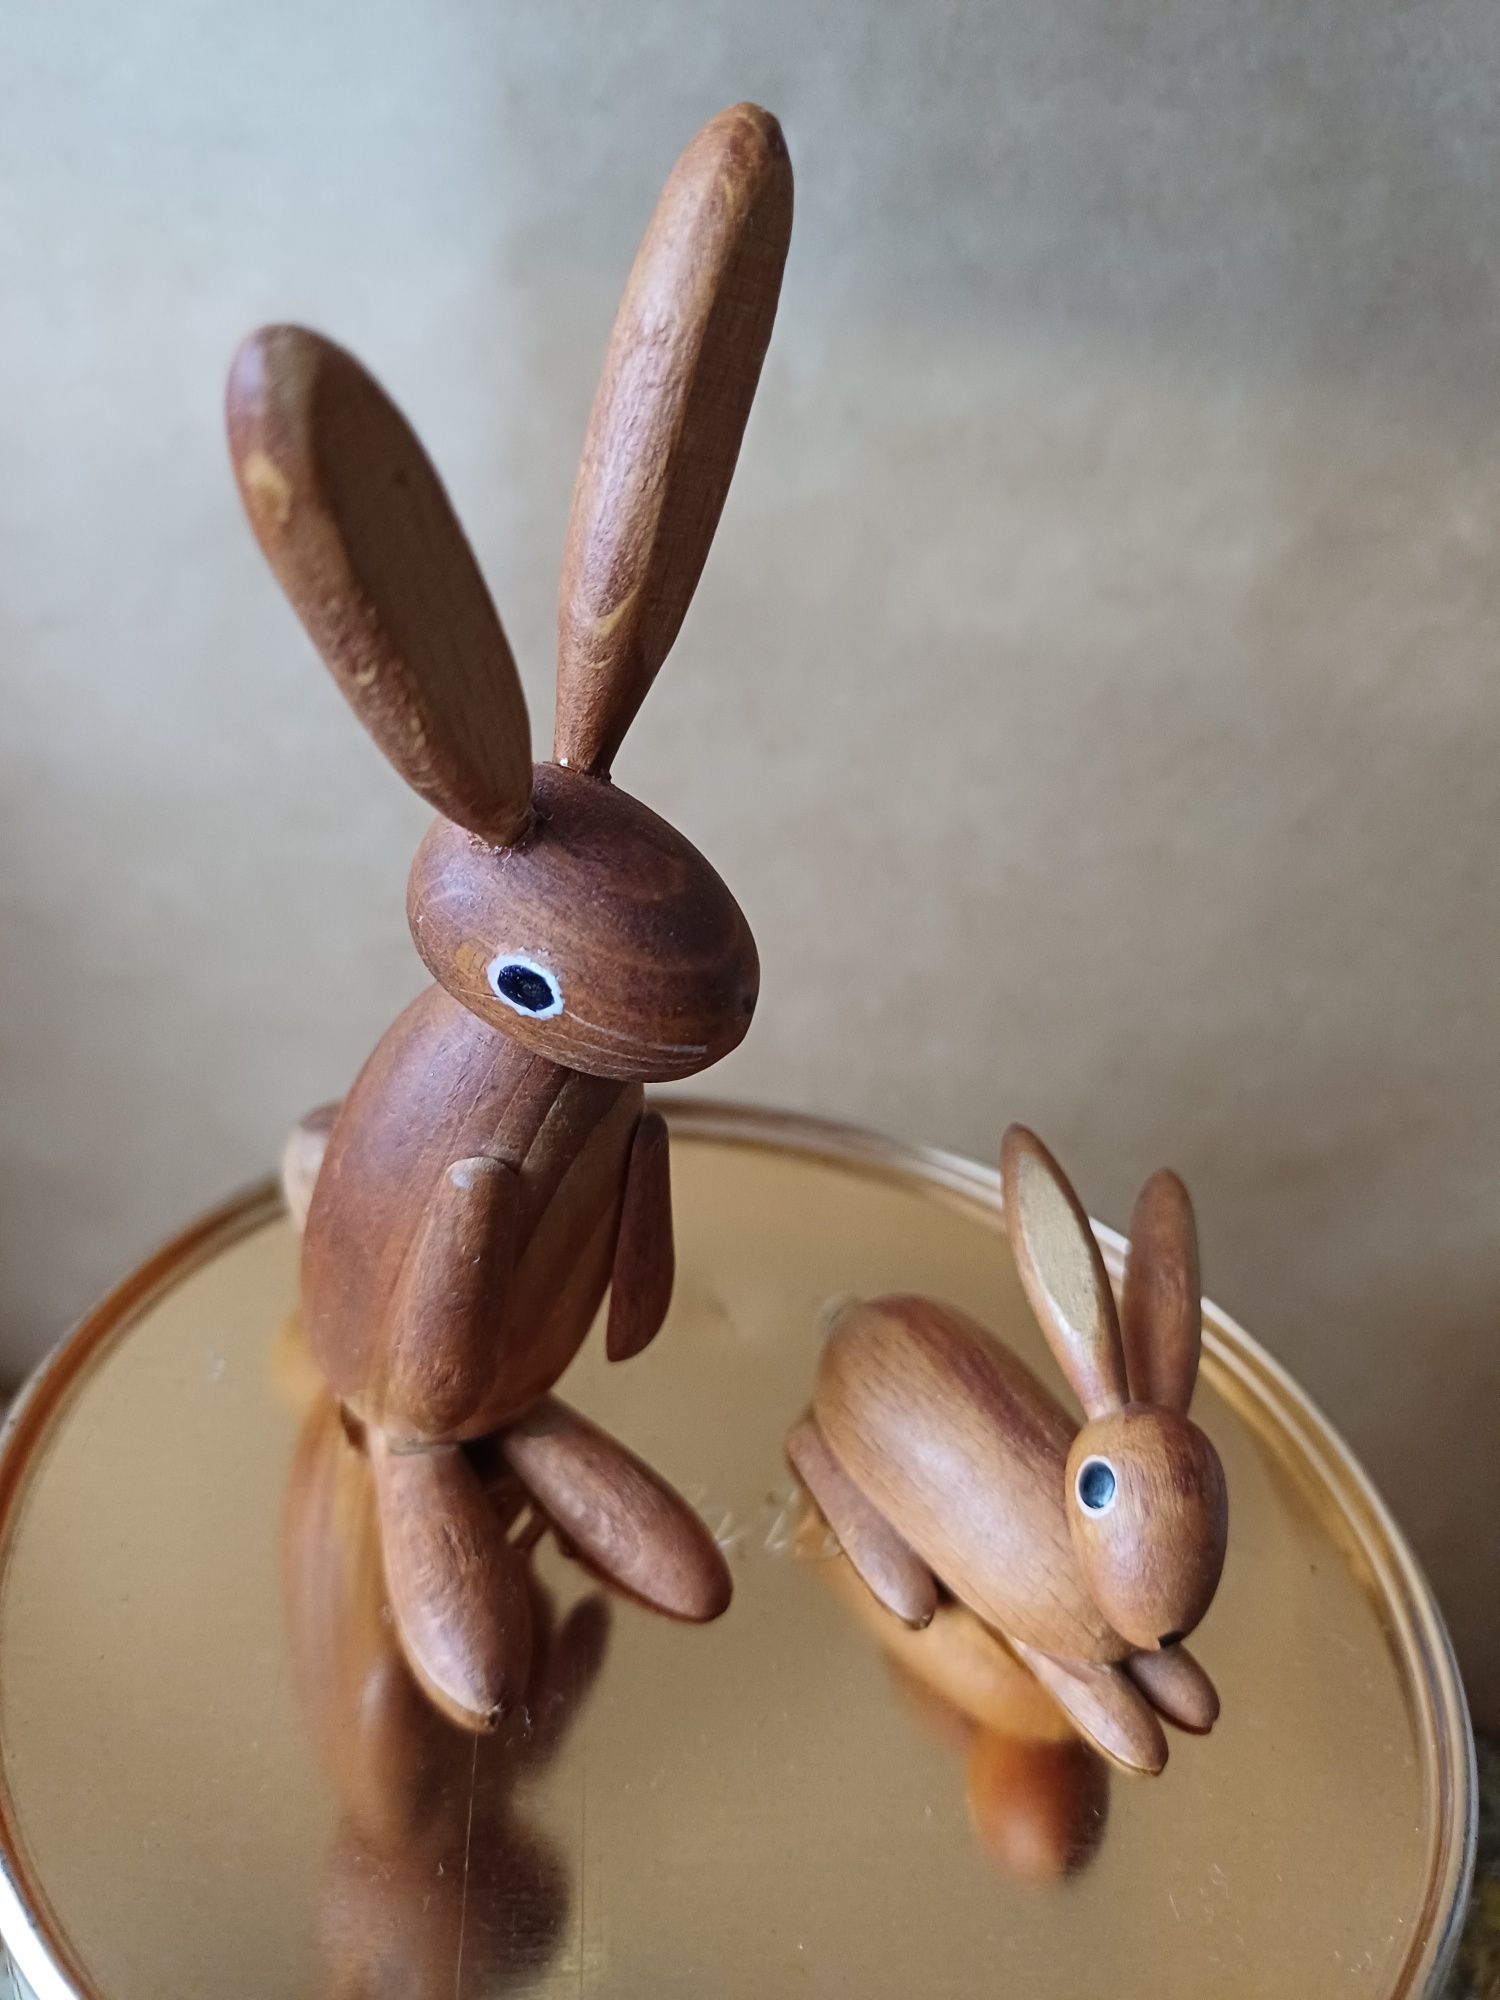 Drewniane zajączki króliczki królik stara figurka retro vintage drewno